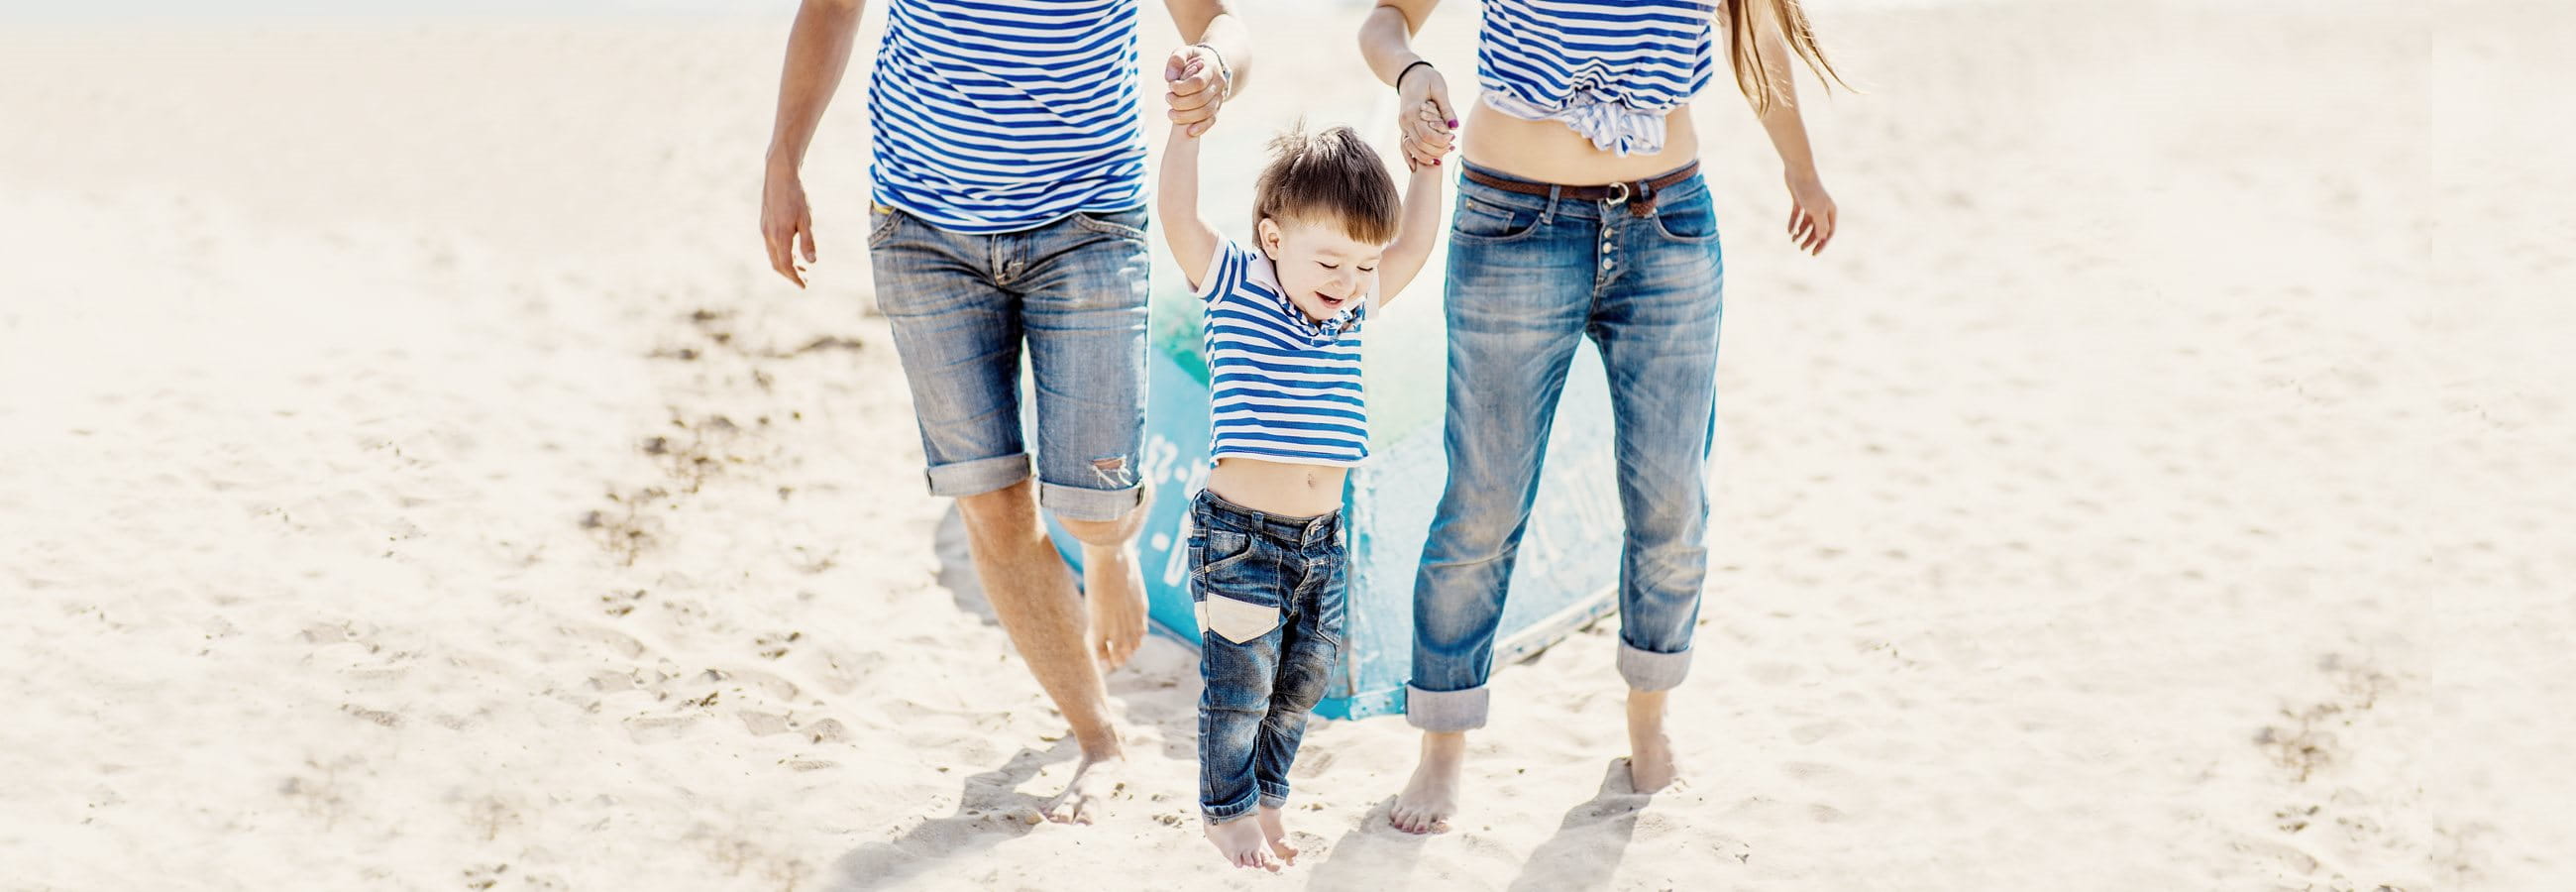 Happy family at the beach